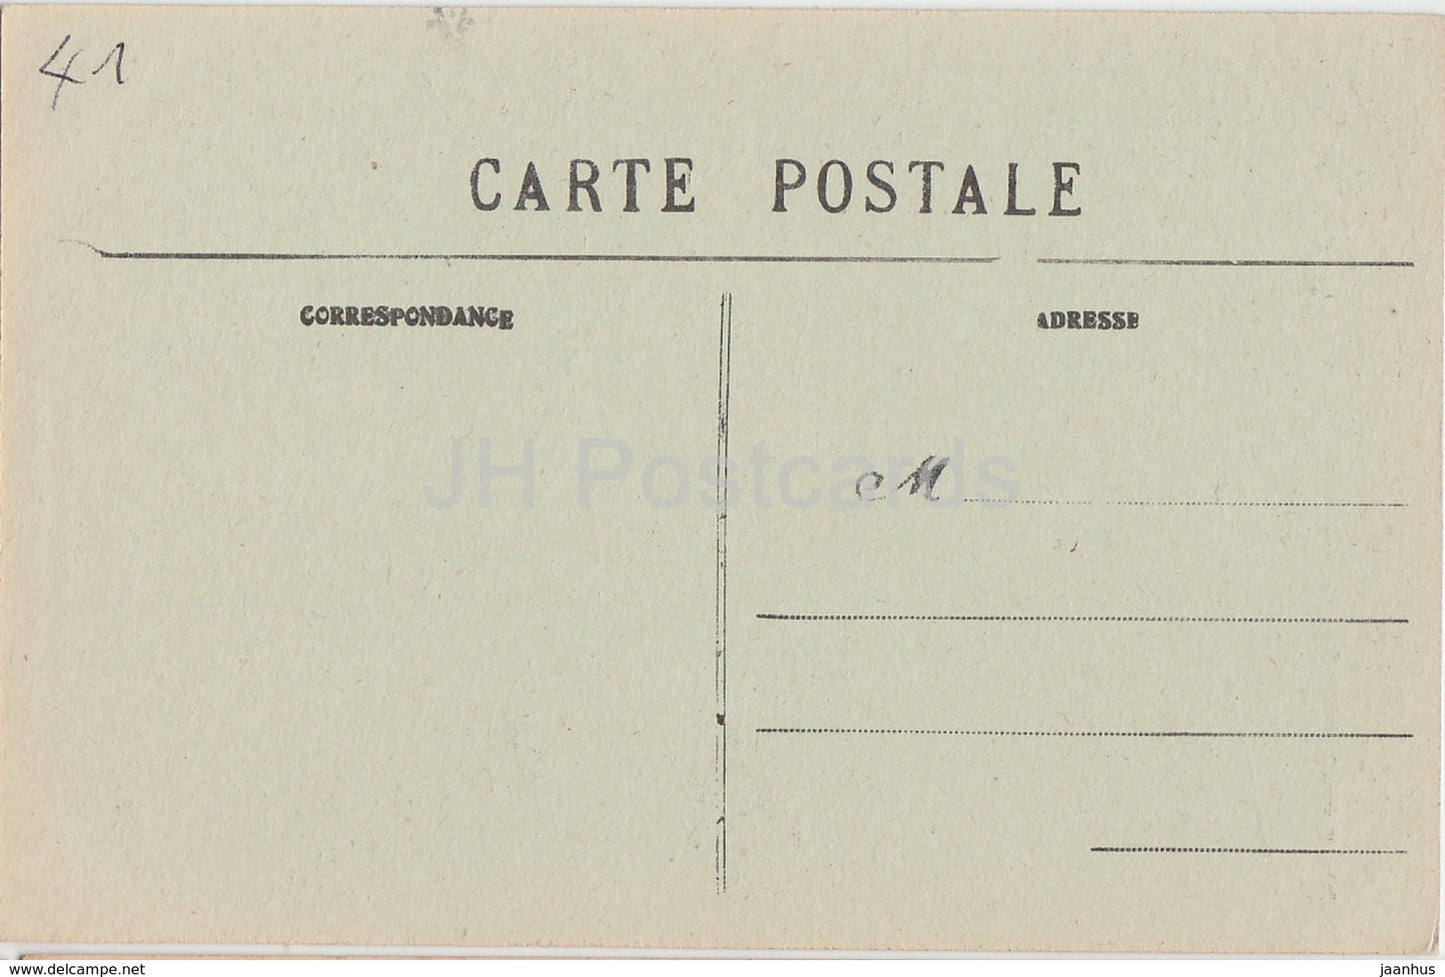 Lavardin - Pres Montoire - Restes de la Voute du Donjon - Burgruine - 6 - alte Postkarte - Frankreich - unbenutzt